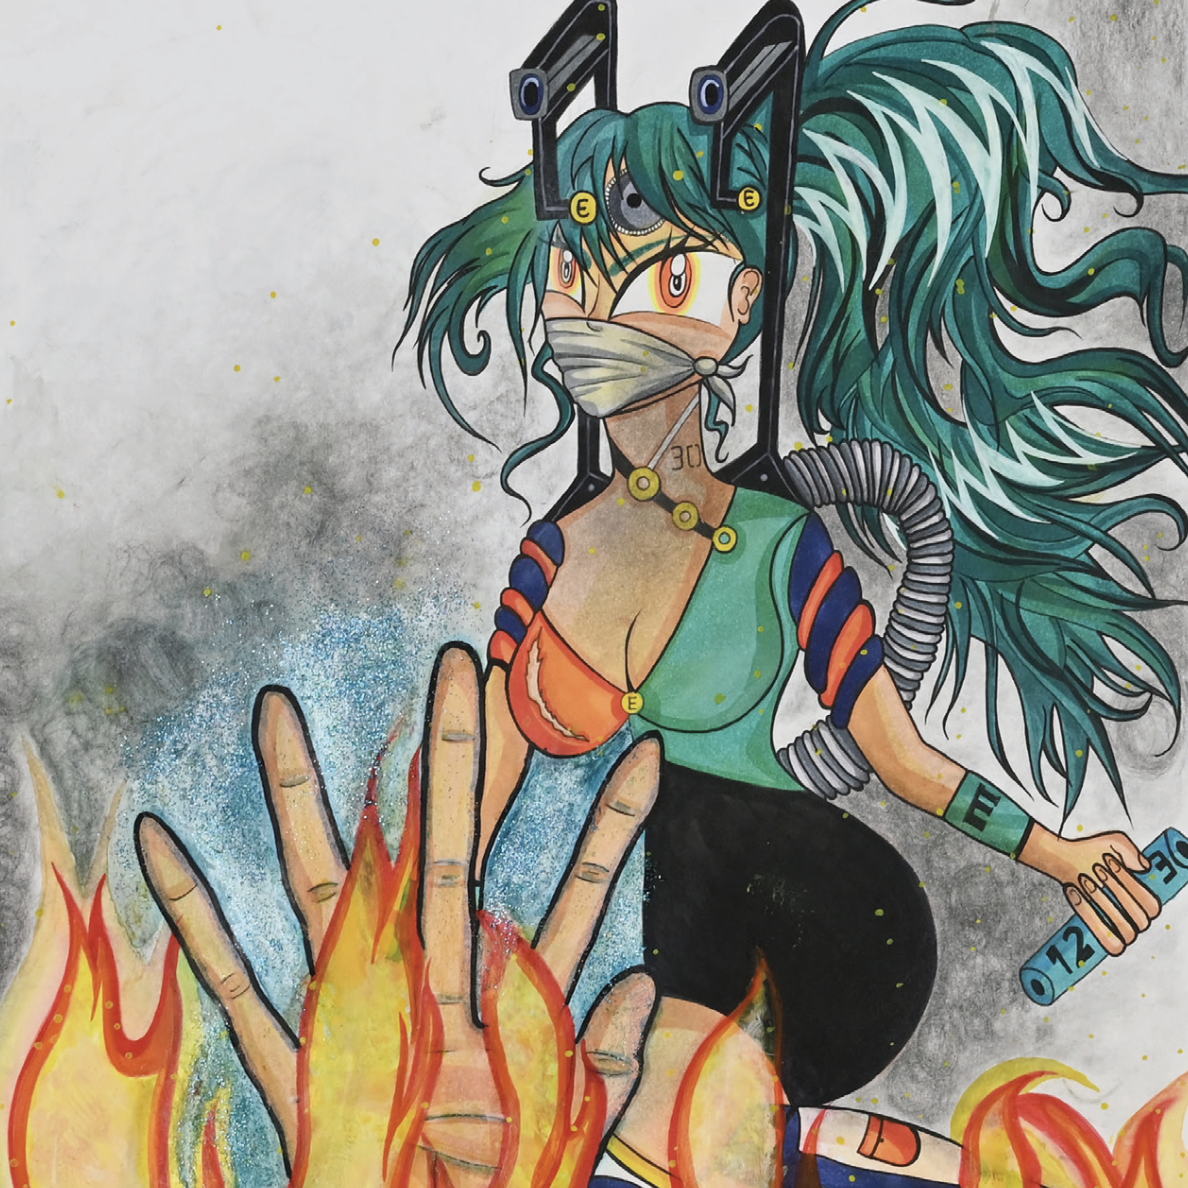 Zeichnung einer Frau mit grünen Haaren und Mundschutz, Flammen im Vordergrund